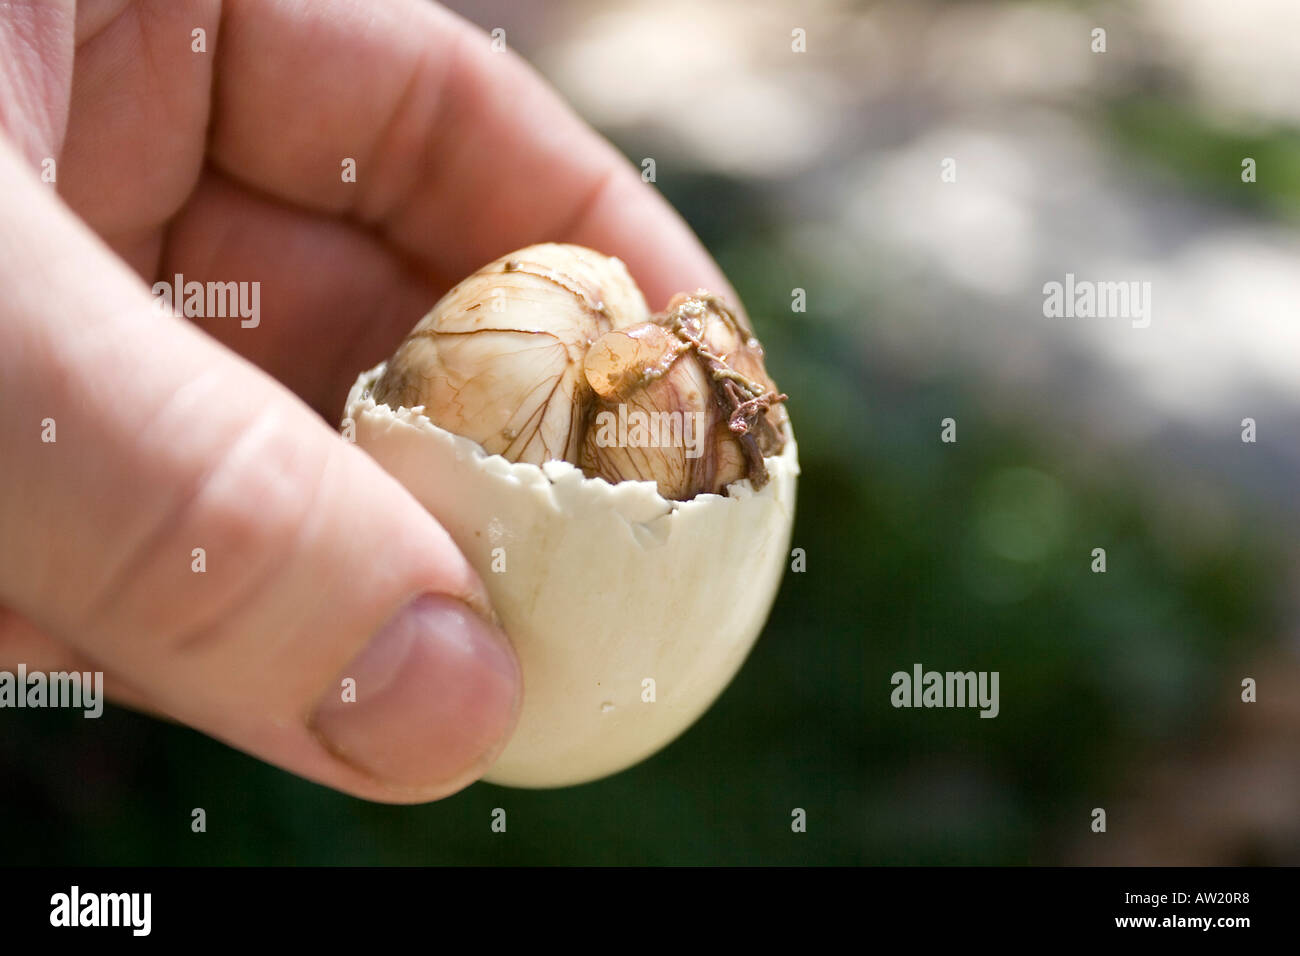 Balut ( duck's egg couvée pendant environ 17 jours), la délicatesse sur les Philippines Banque D'Images